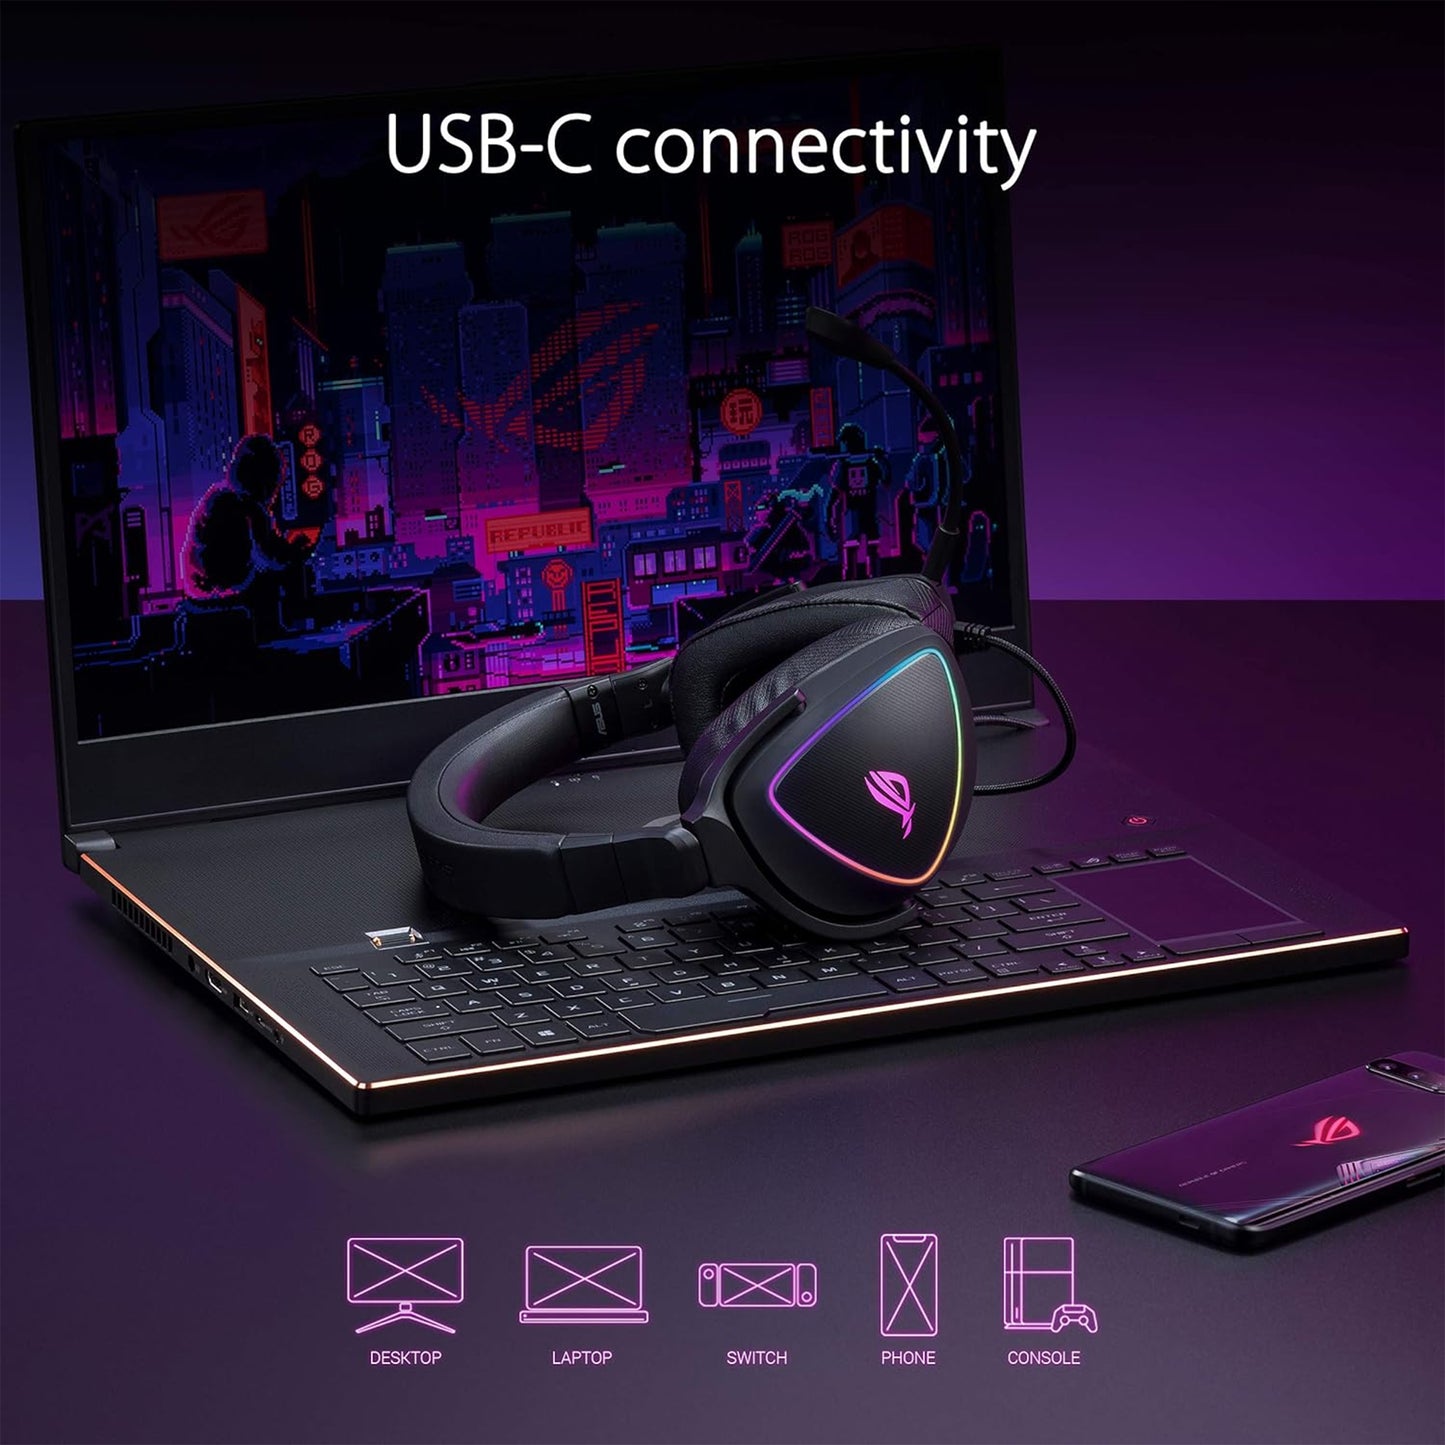 سماعة الألعاب ASUS ROG Delta S مع USB-C | ميكروفون لإلغاء الضوضاء يعمل بالذكاء الاصطناعي | سماعات رأس فوق الأذن لأجهزة الكمبيوتر الشخصية وأجهزة Mac وNintendo Switch وSony Playstation | تصميم مريح، أسود 